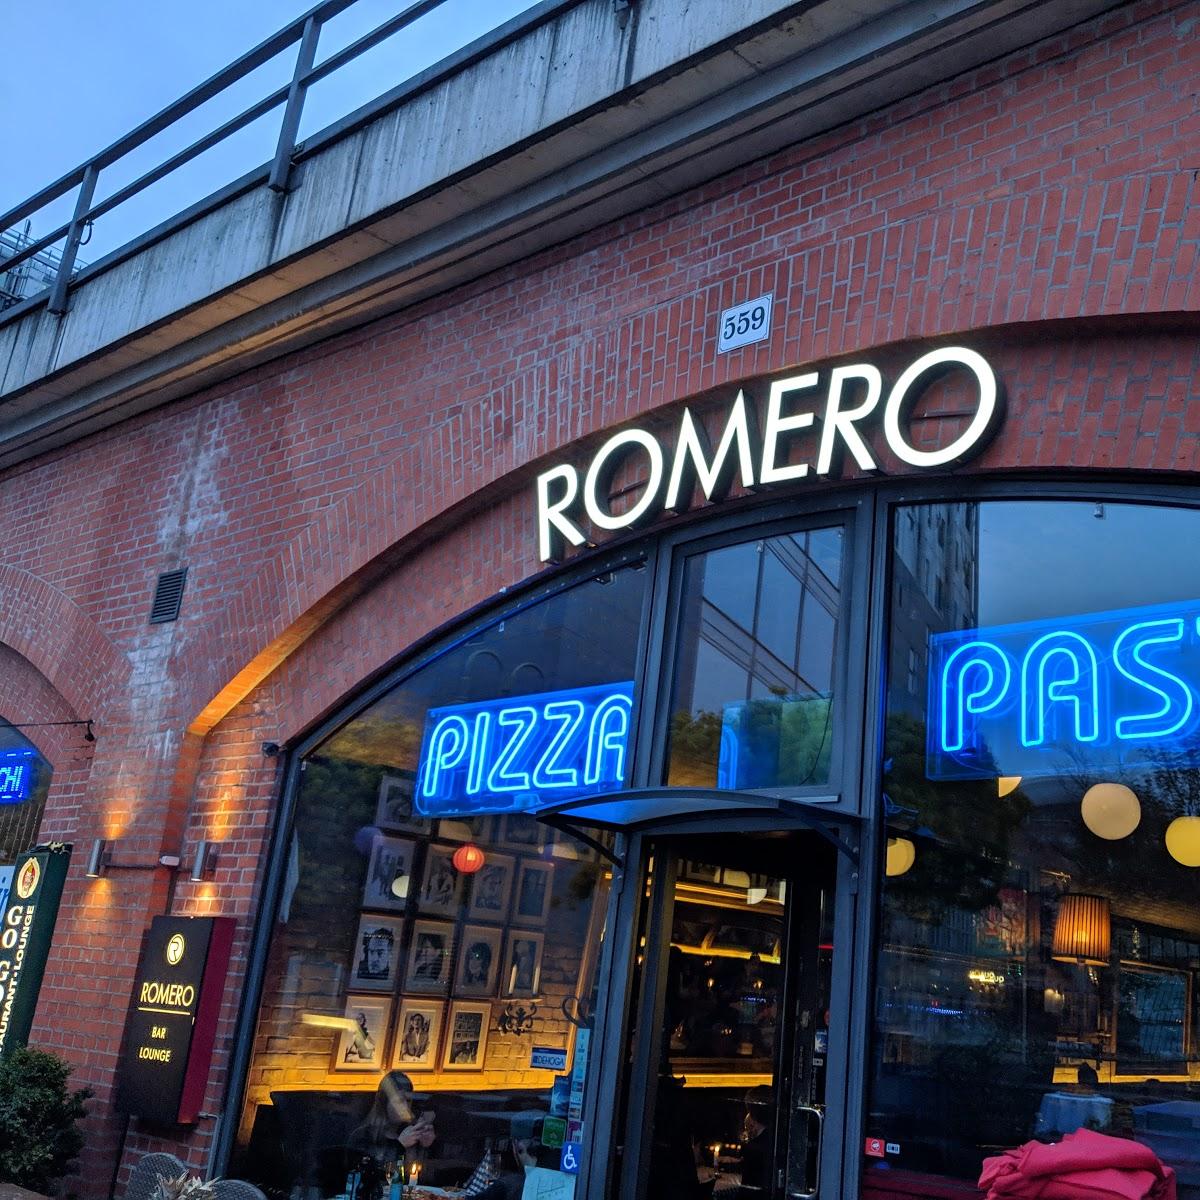 Restaurant "ROMERO" in  Berlin